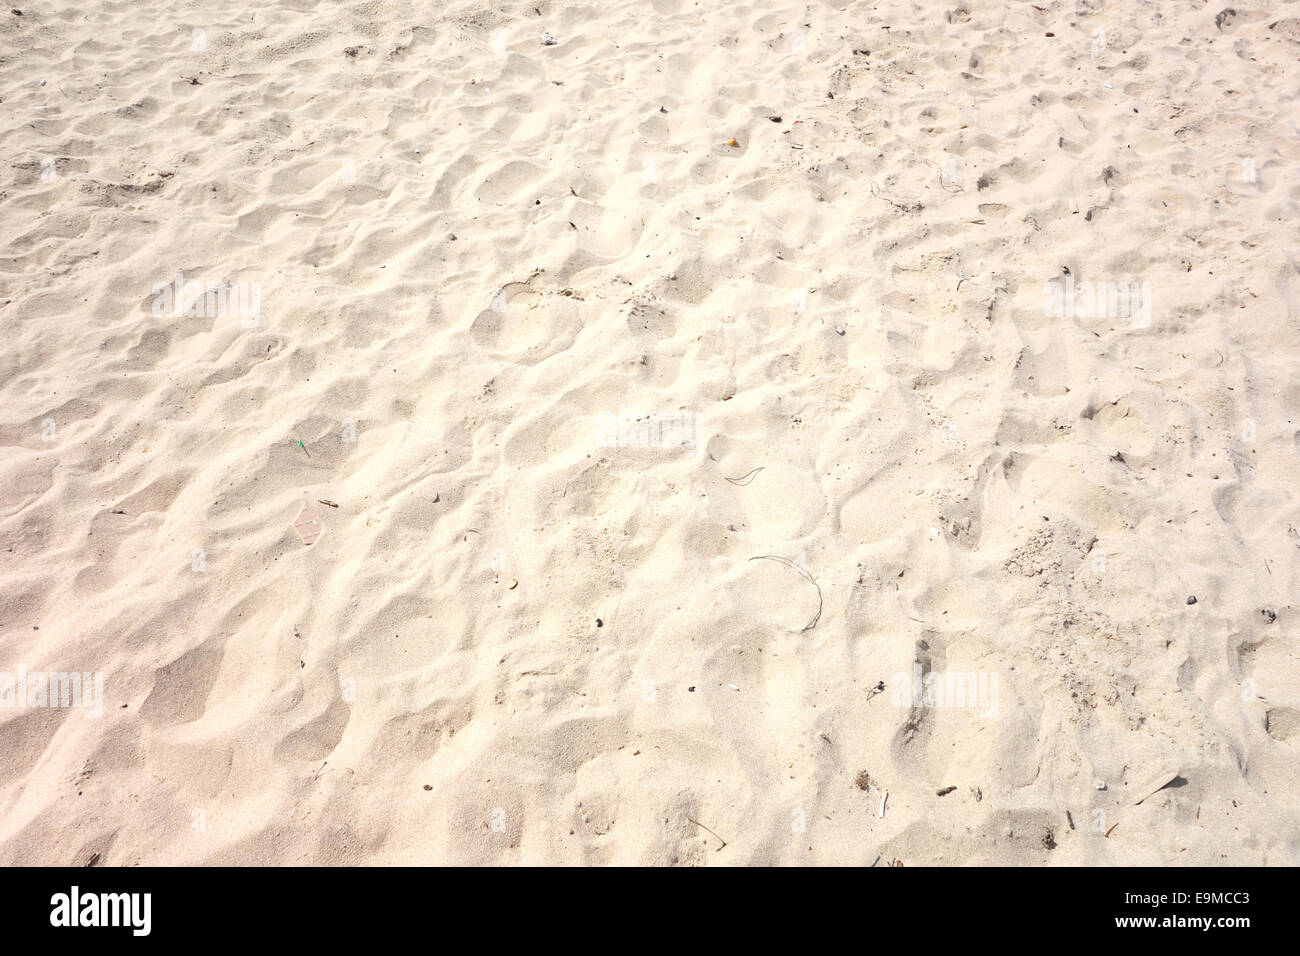 cierra la textura de la arena en la playa en verano. patrón de playa  natural de arena blanca 17186167 Foto de stock en Vecteezy